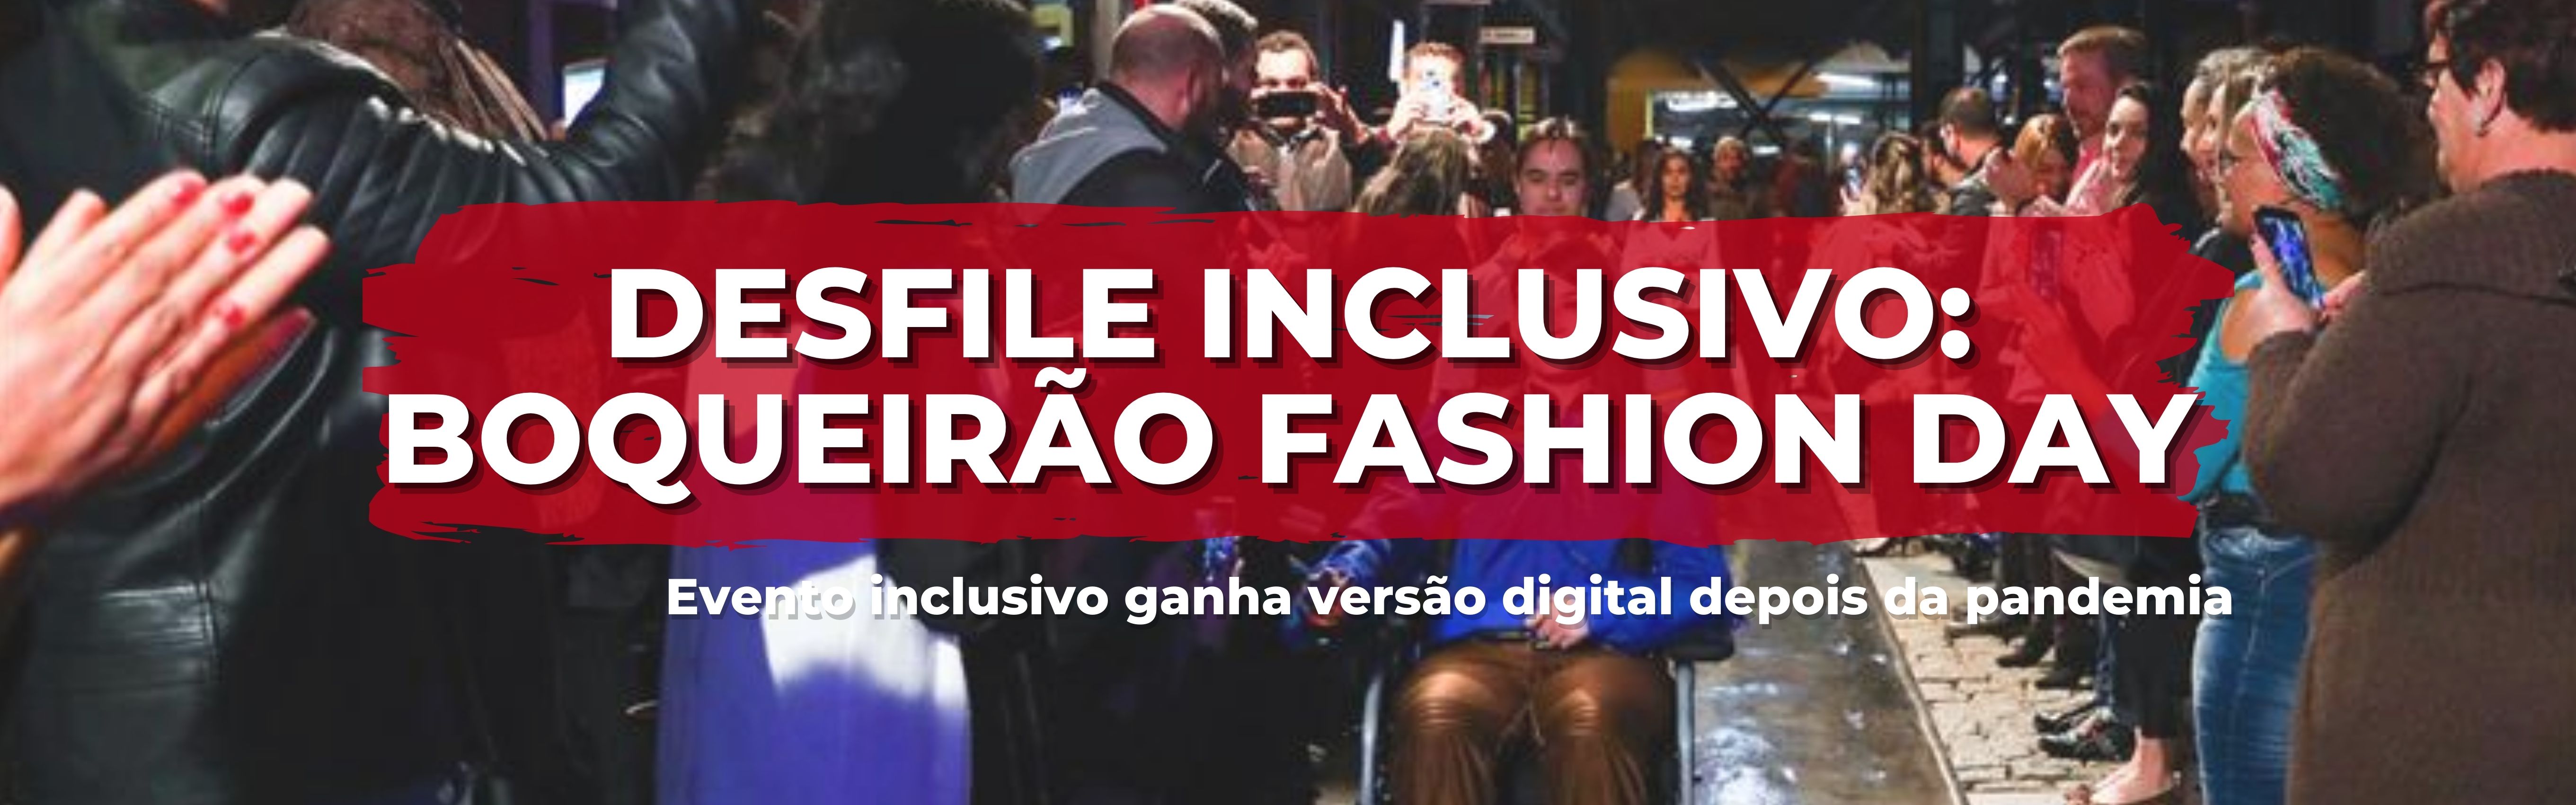 Boqueirão Fashion Day Faz Desfile Inclusivo Blog Aria Moda Inclusiva 2420